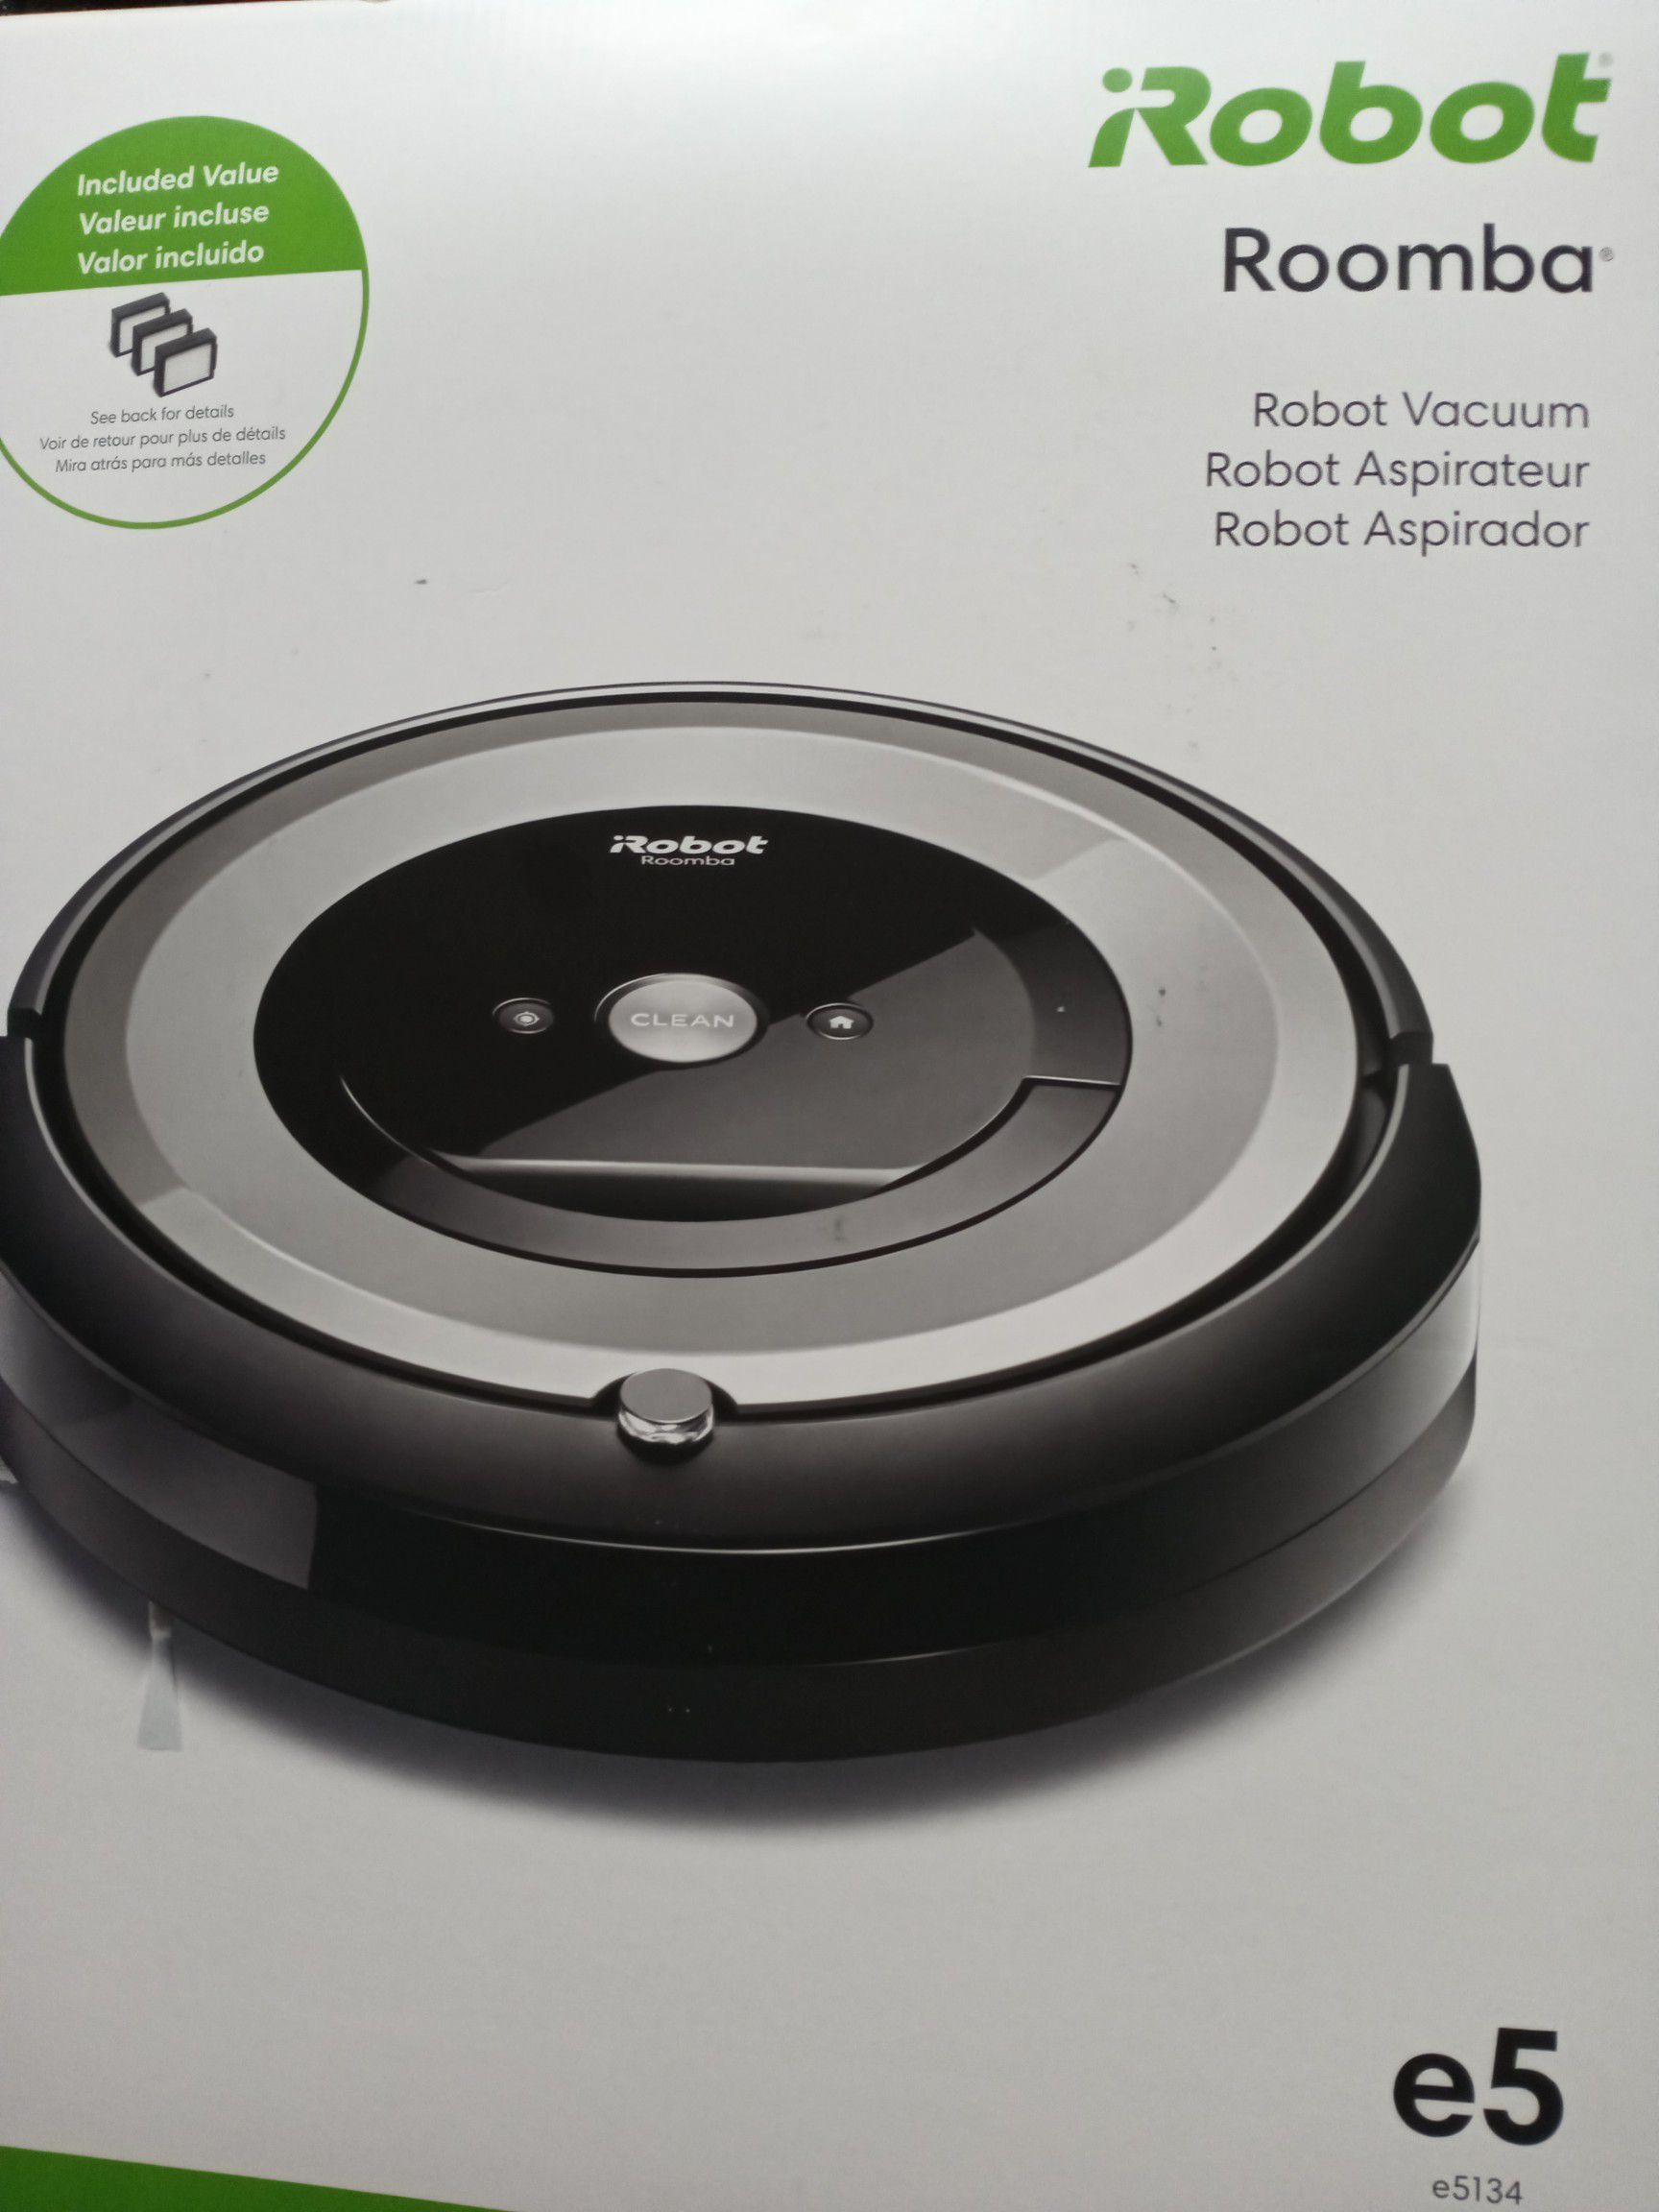 Roomba brand new